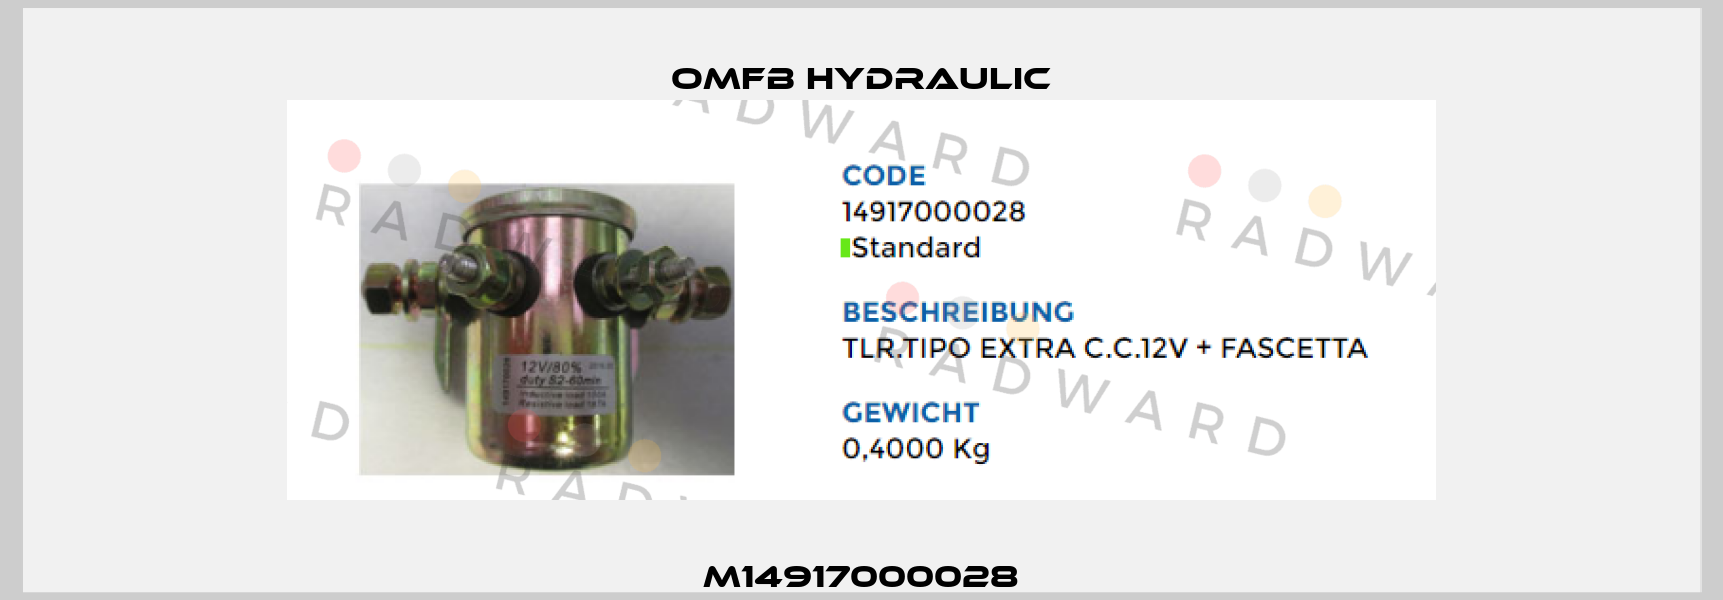 M14917000028 OMFB Hydraulic